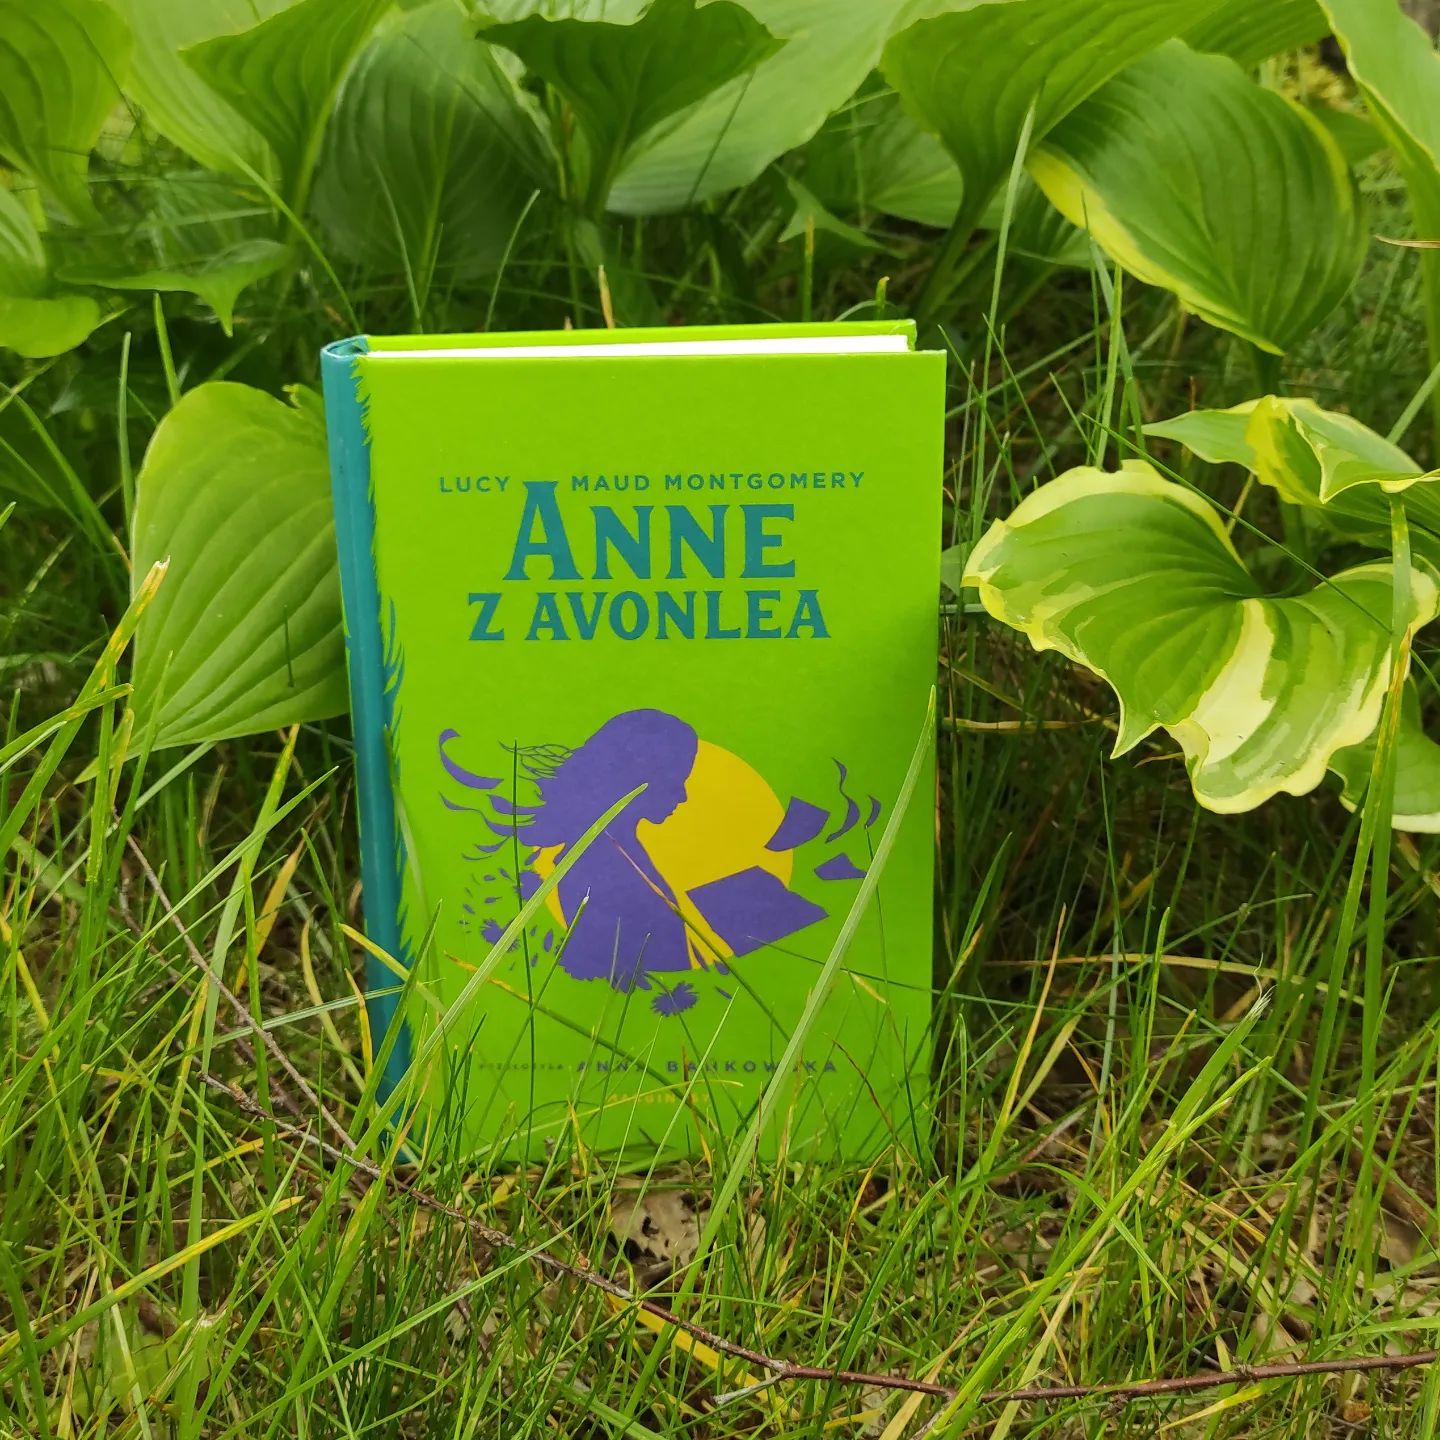 Bez atmosfery skandalu i internetowych dyskusji ukazał się niedawno nowy przekład "Anne z Avonlea". Tłumaczenie Anny Bańkowskiej dobrze zrobiło drugiemu tomowi opowieści o Anne Shirley, który nabrał świeżości i humoru, a za to stracił, na szczęście, na górnolotności.
#lucymaudmontgomery #annezavonlea #anneofavonlea #aktotłumaczył #annabańkowska #annenieania #kanada #wyspaksięciaedwarda #avonlea #anneshirley #książki #książka #czytaniejestfajne #bookstagram #bookstagrampl #polskibookstagram #czytaniejestfajne #czytajksiążki #kochamksiążki #ksiażkanadziś #książkadobranawszystko #zacofanywlekturze